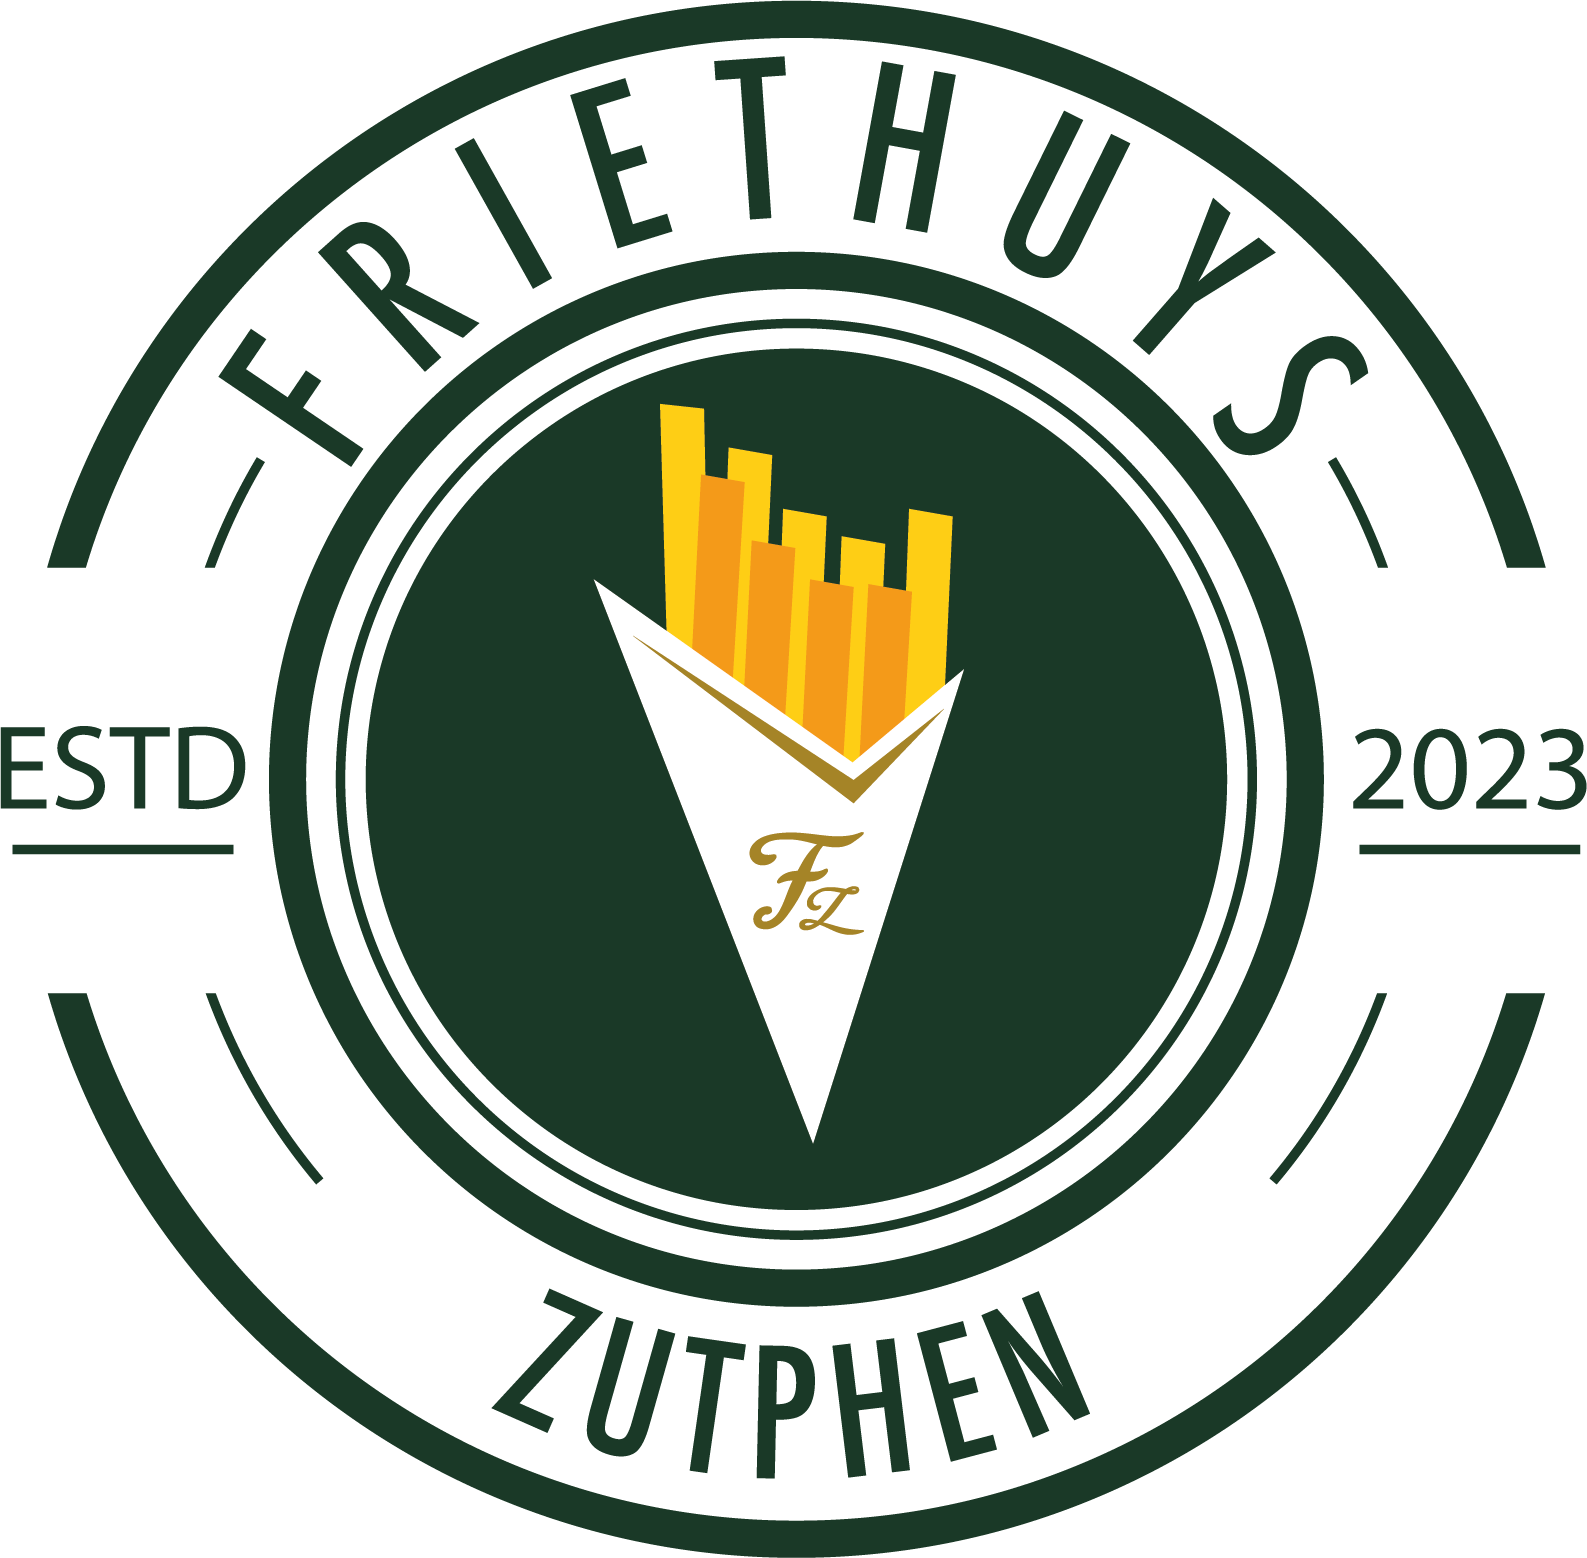 Logo Friethuys Zutphen Voorheen kasteleijntje